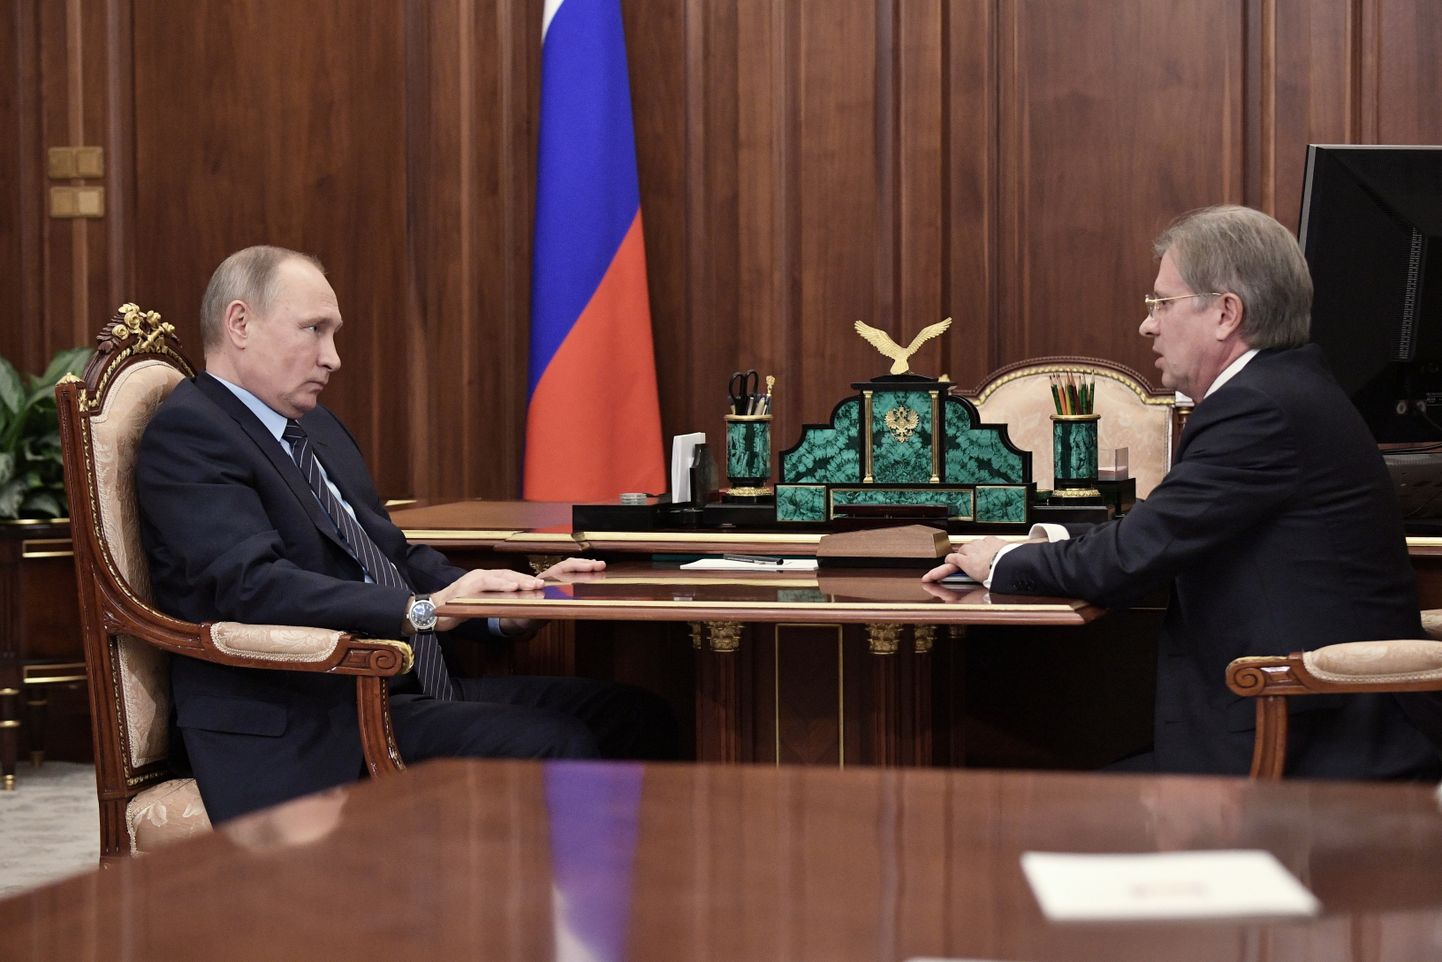 Председатель совета директоров "Аэрофлота" Виталий Савельев на встрече с Владимиром Путиным